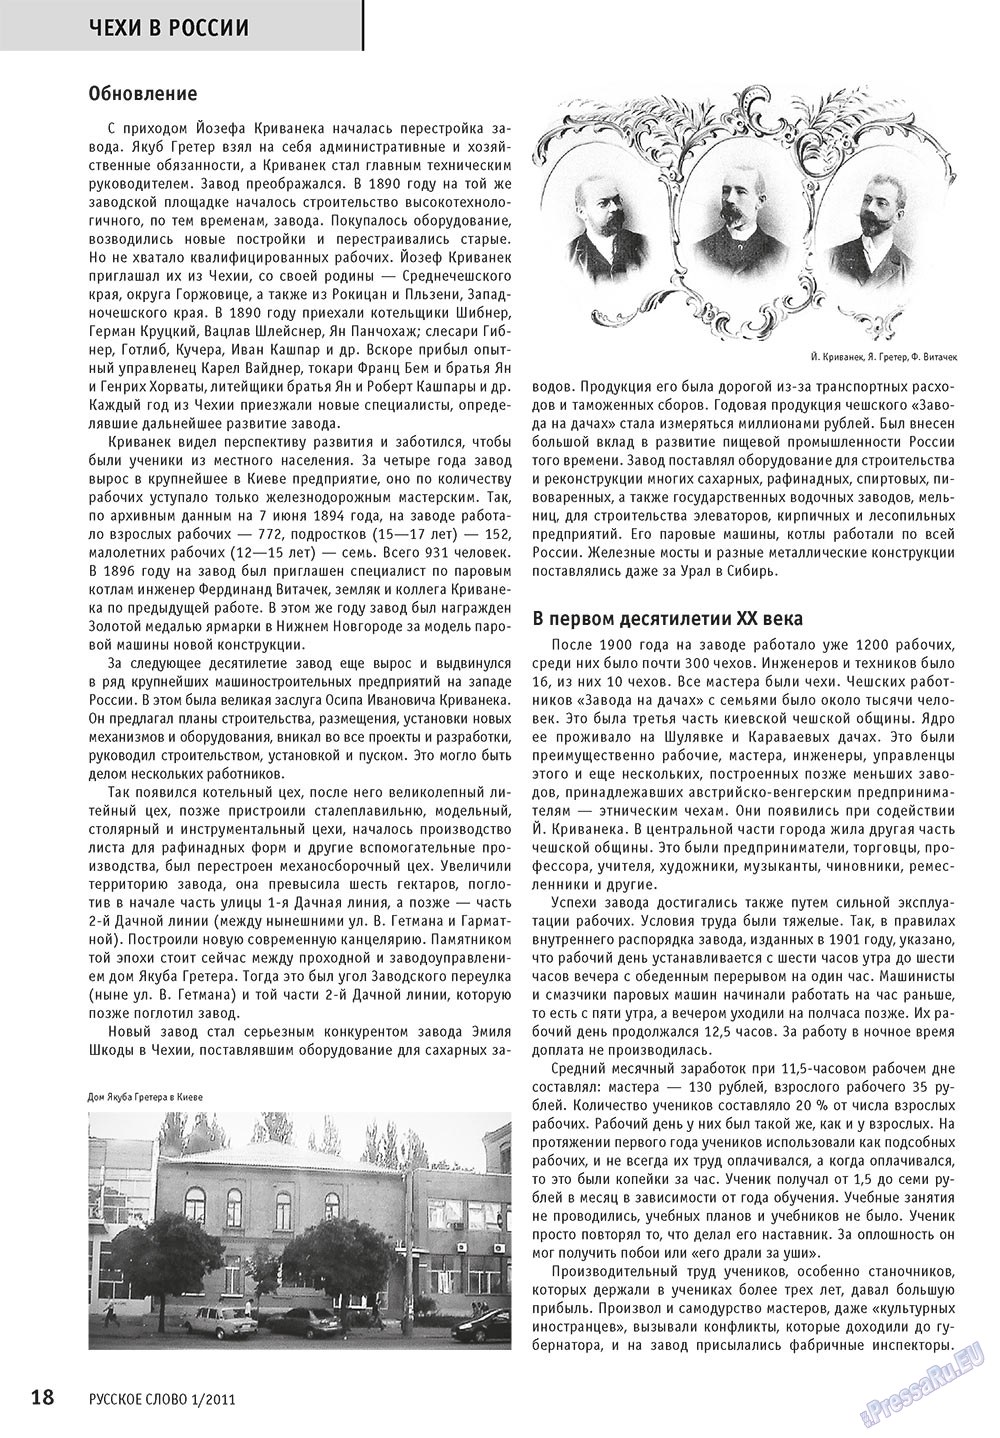 Русское слово, журнал. 2011 №1 стр.20